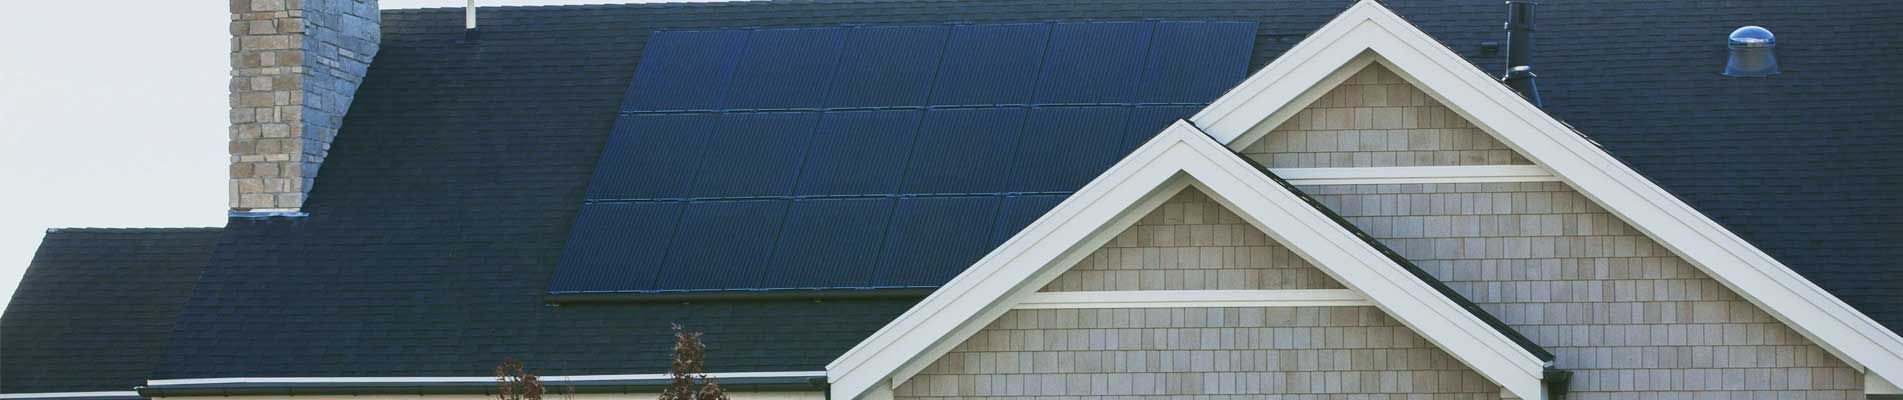 Home Solar Installation Brisbane